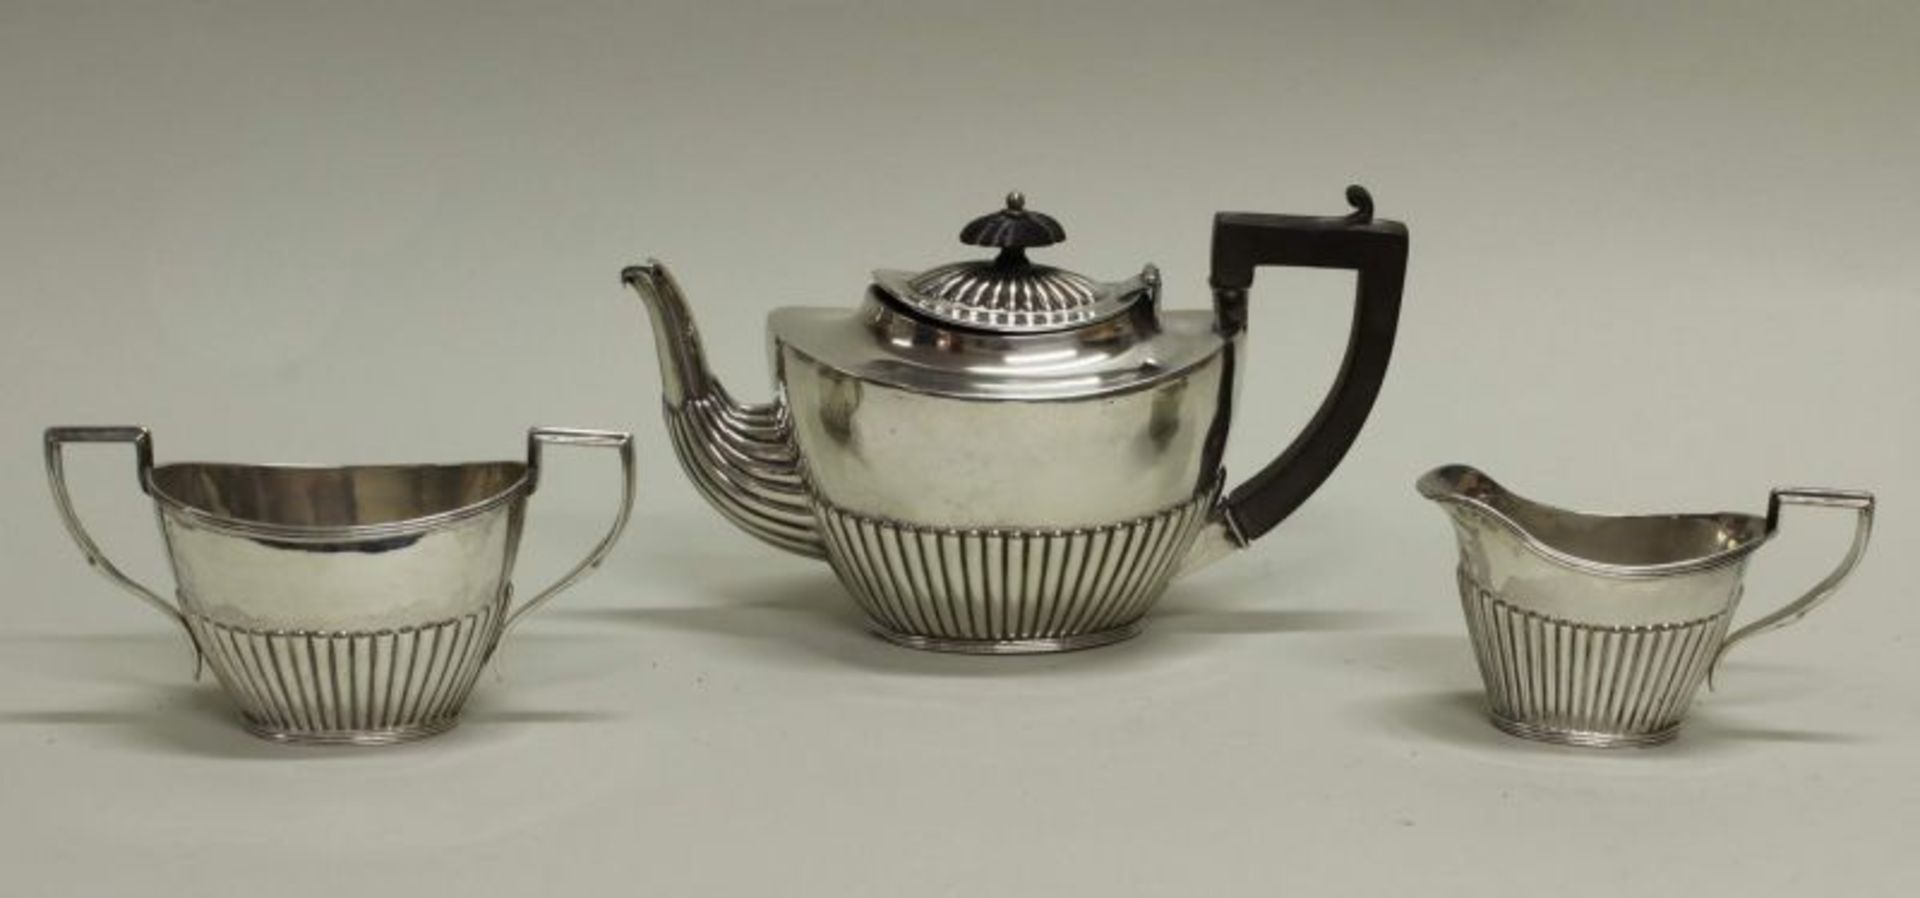 Teekanne, Sahnegießer, Zuckerschale, Silber 925, Birmingham, 1891, Meistermarke HB, godroniert, J-